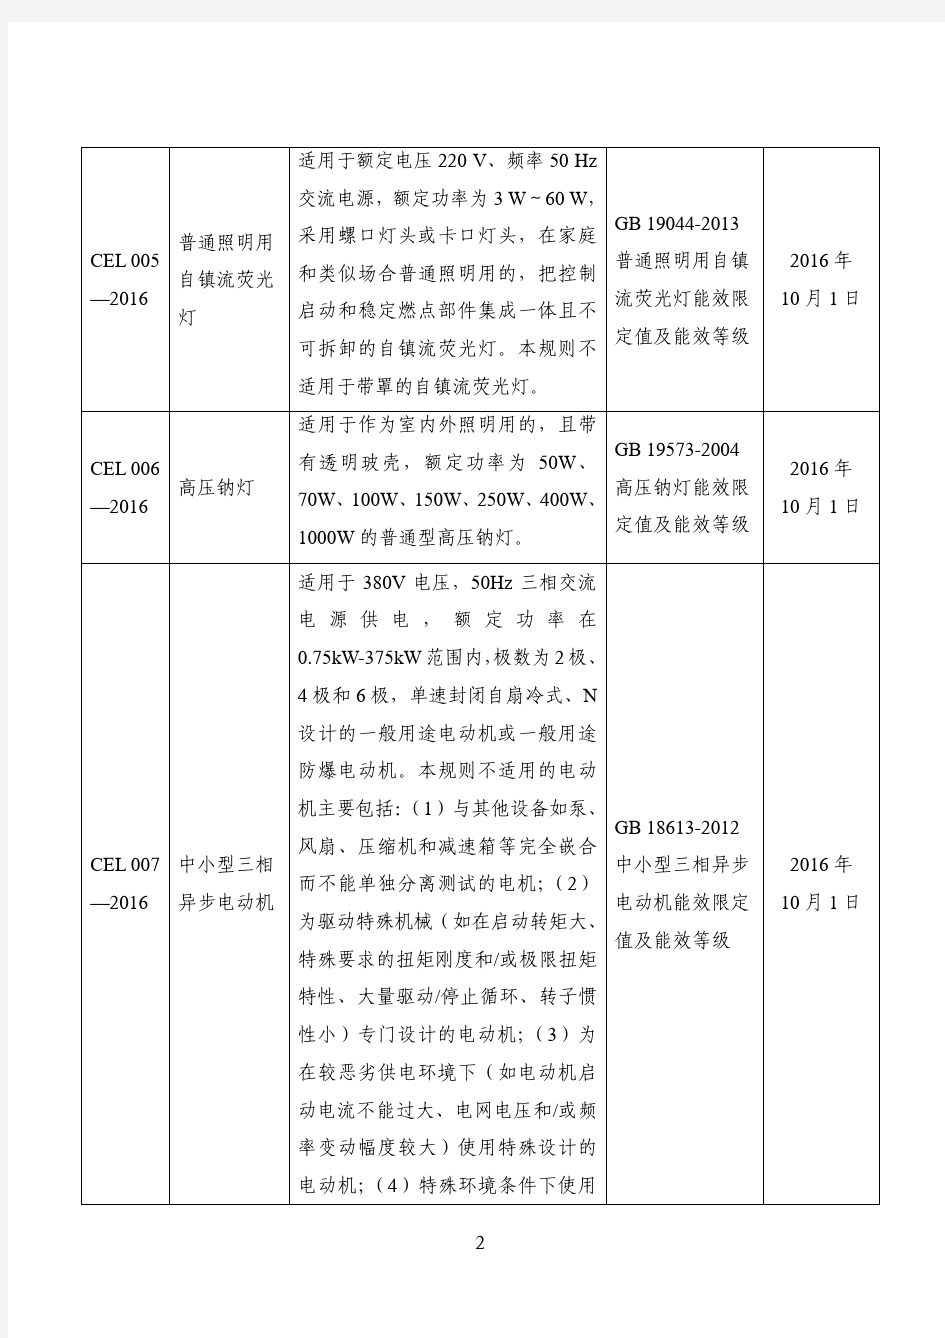 1.中华人民共和国实行能源效率标识的产品目录(2016版)